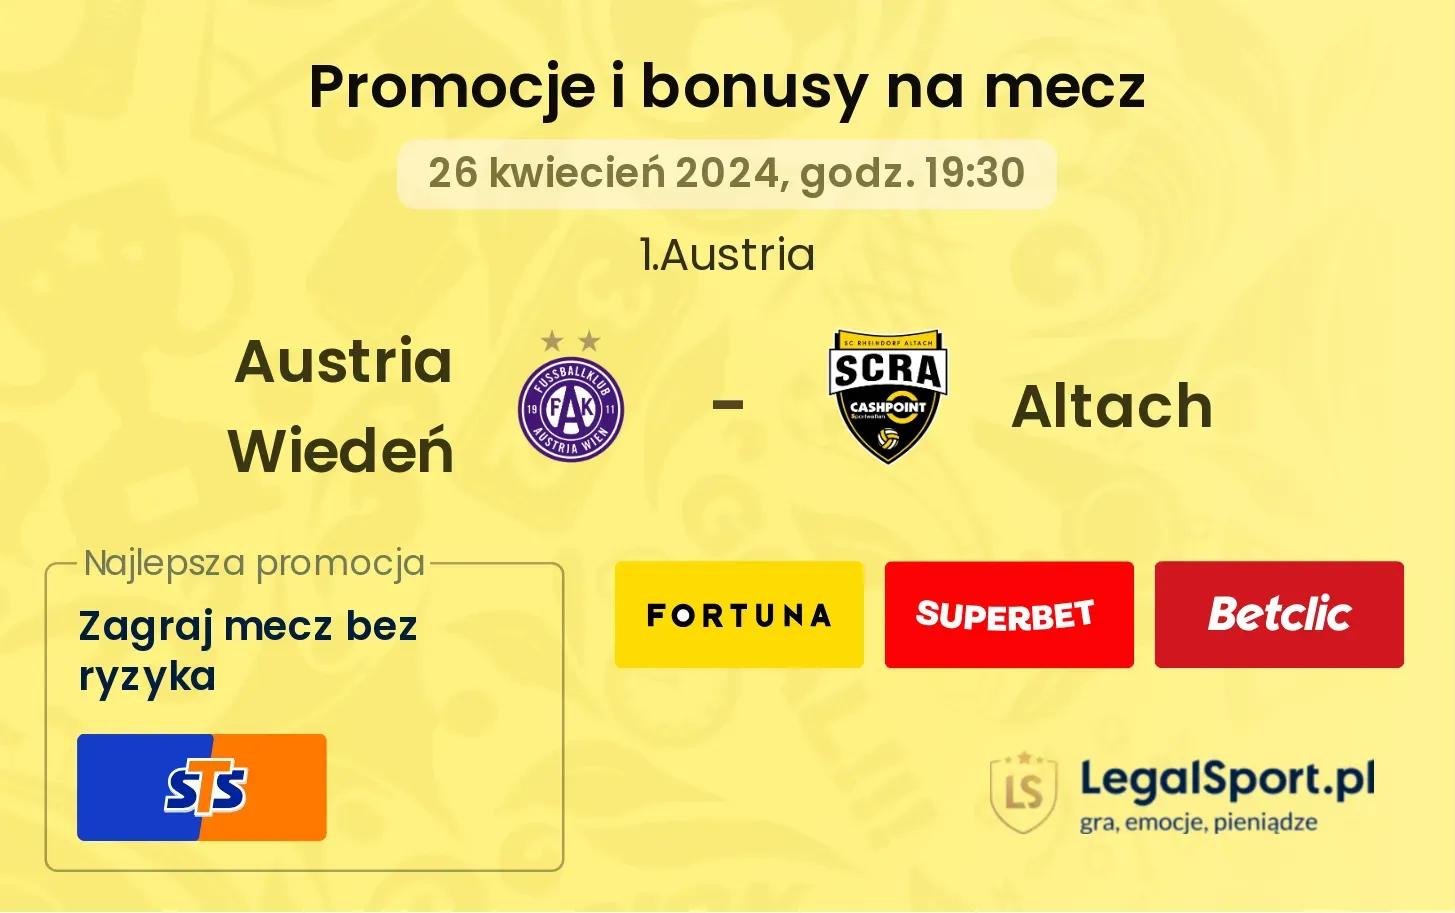 Austria Wiedeń - Altach promocje bonusy na mecz